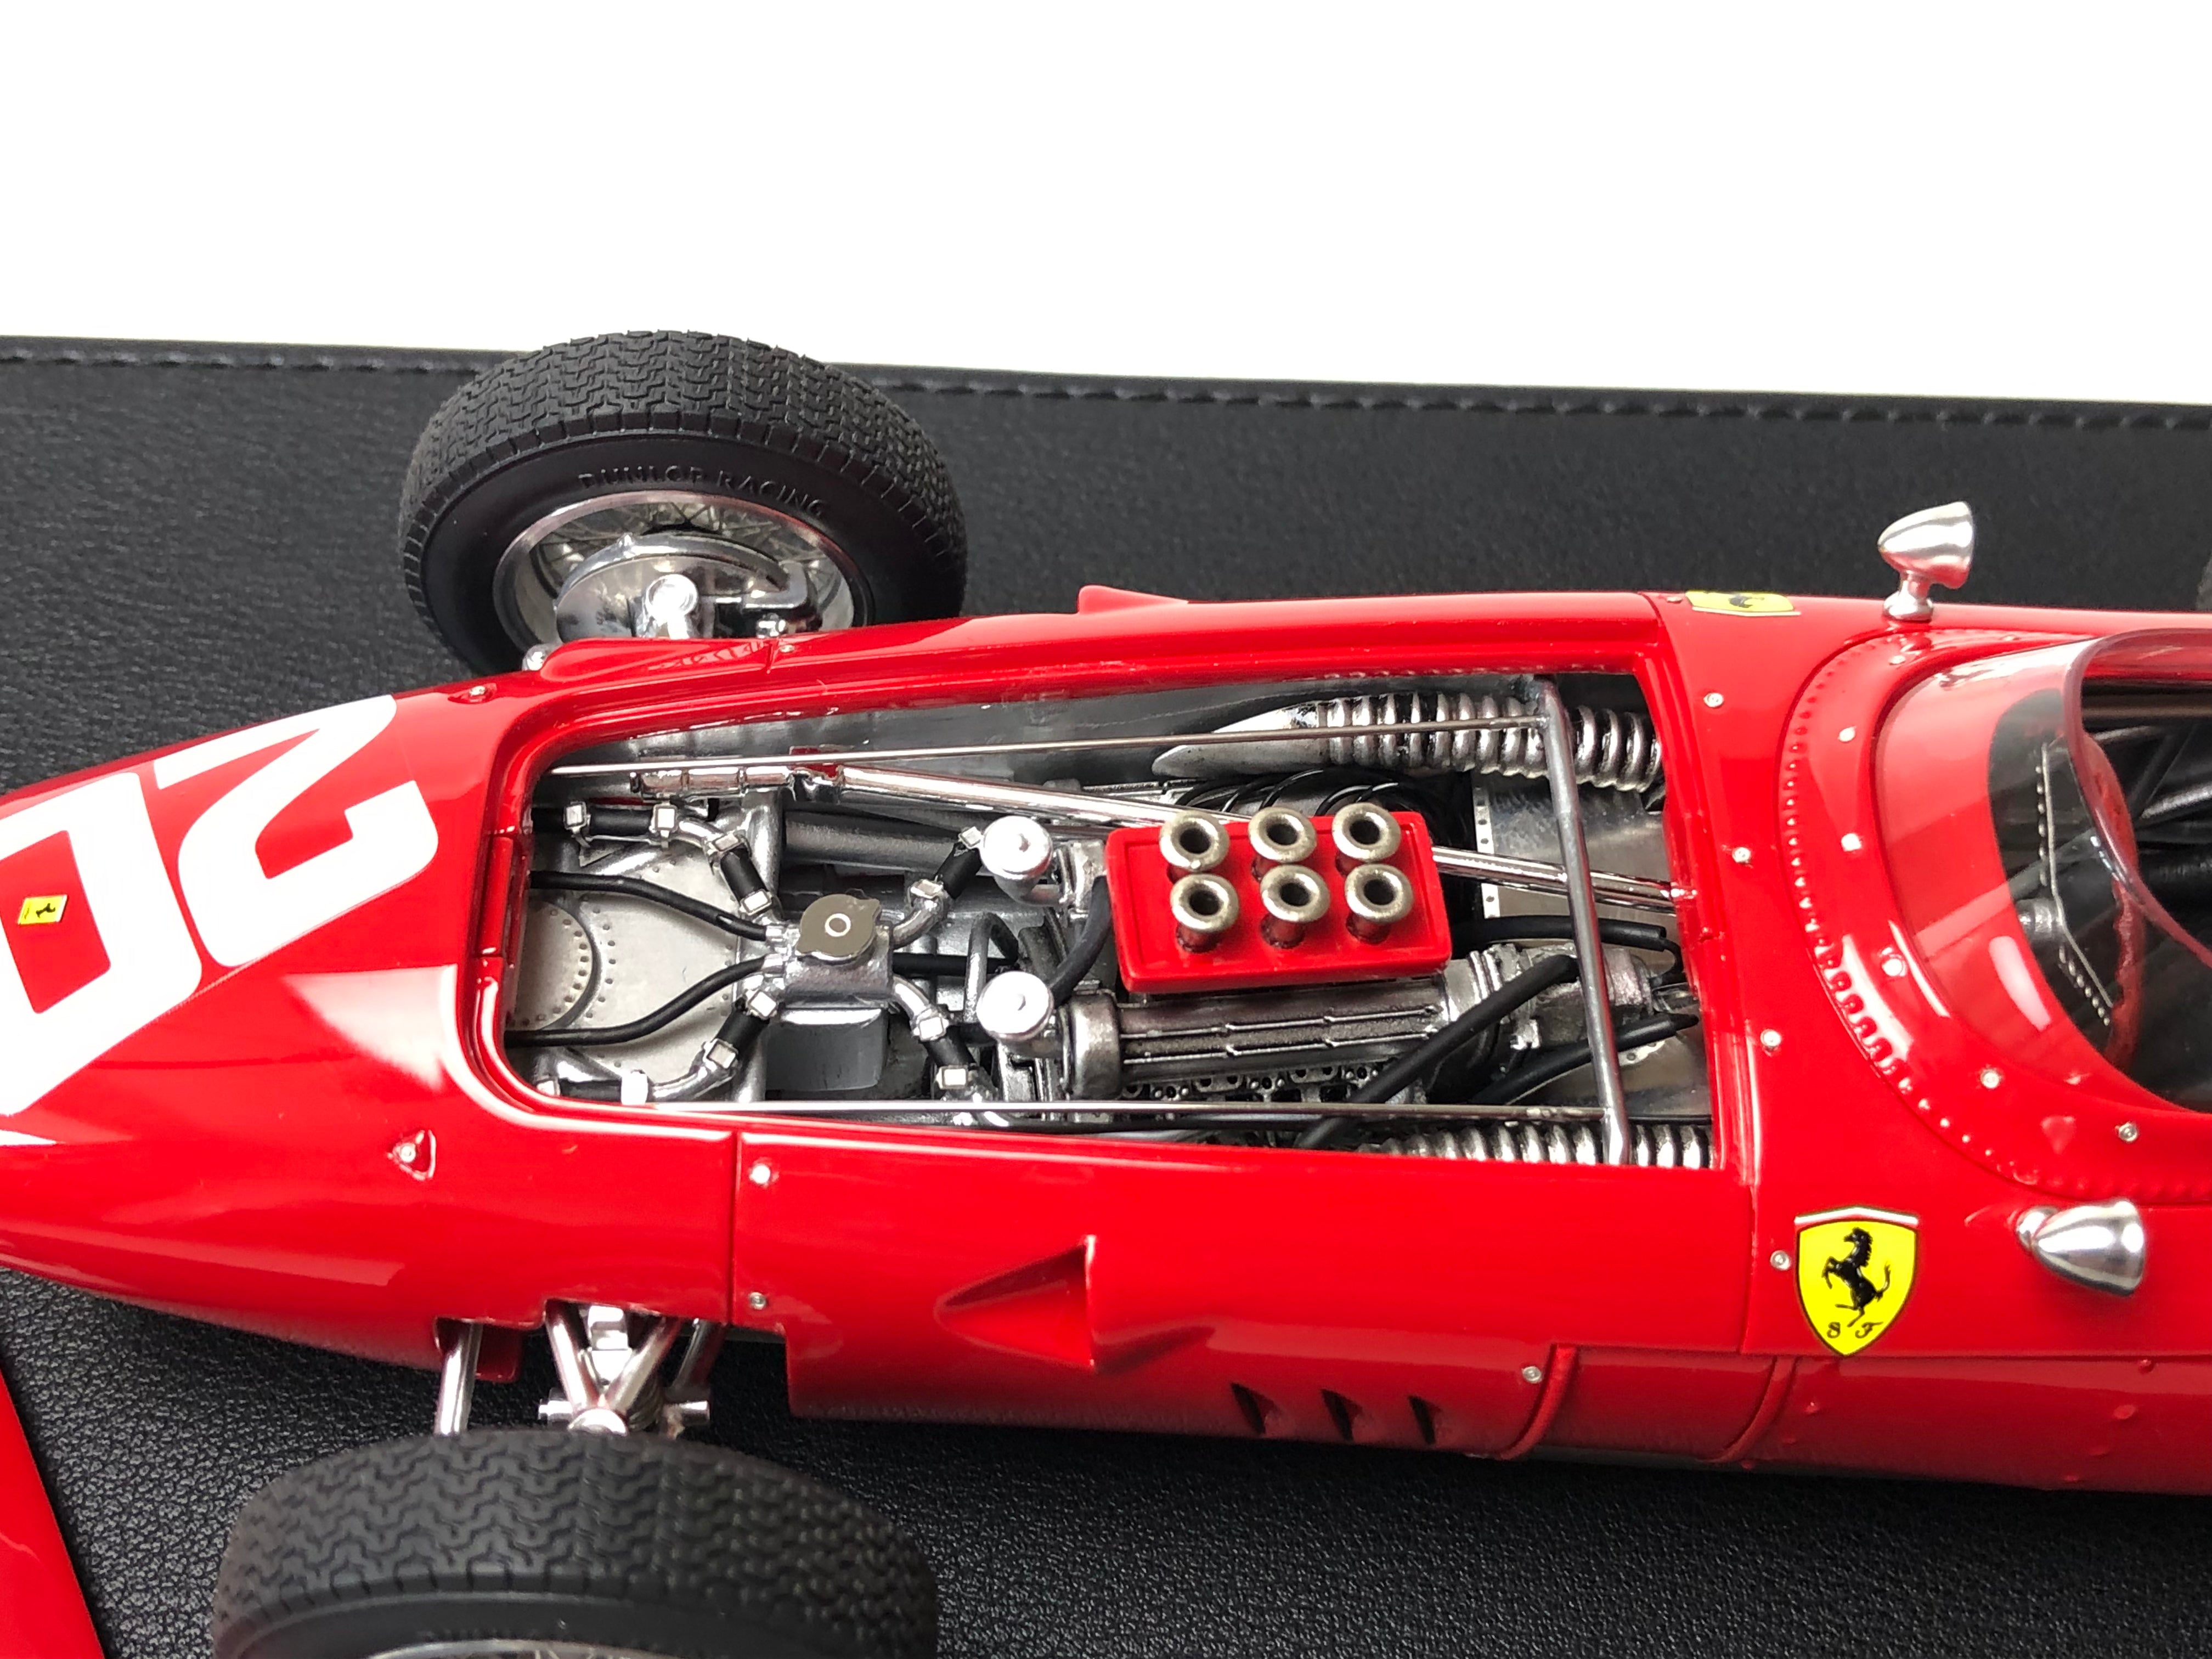 1960 Ferrari 246 Dino F1 #20 Phil Hill, 1:18 scale